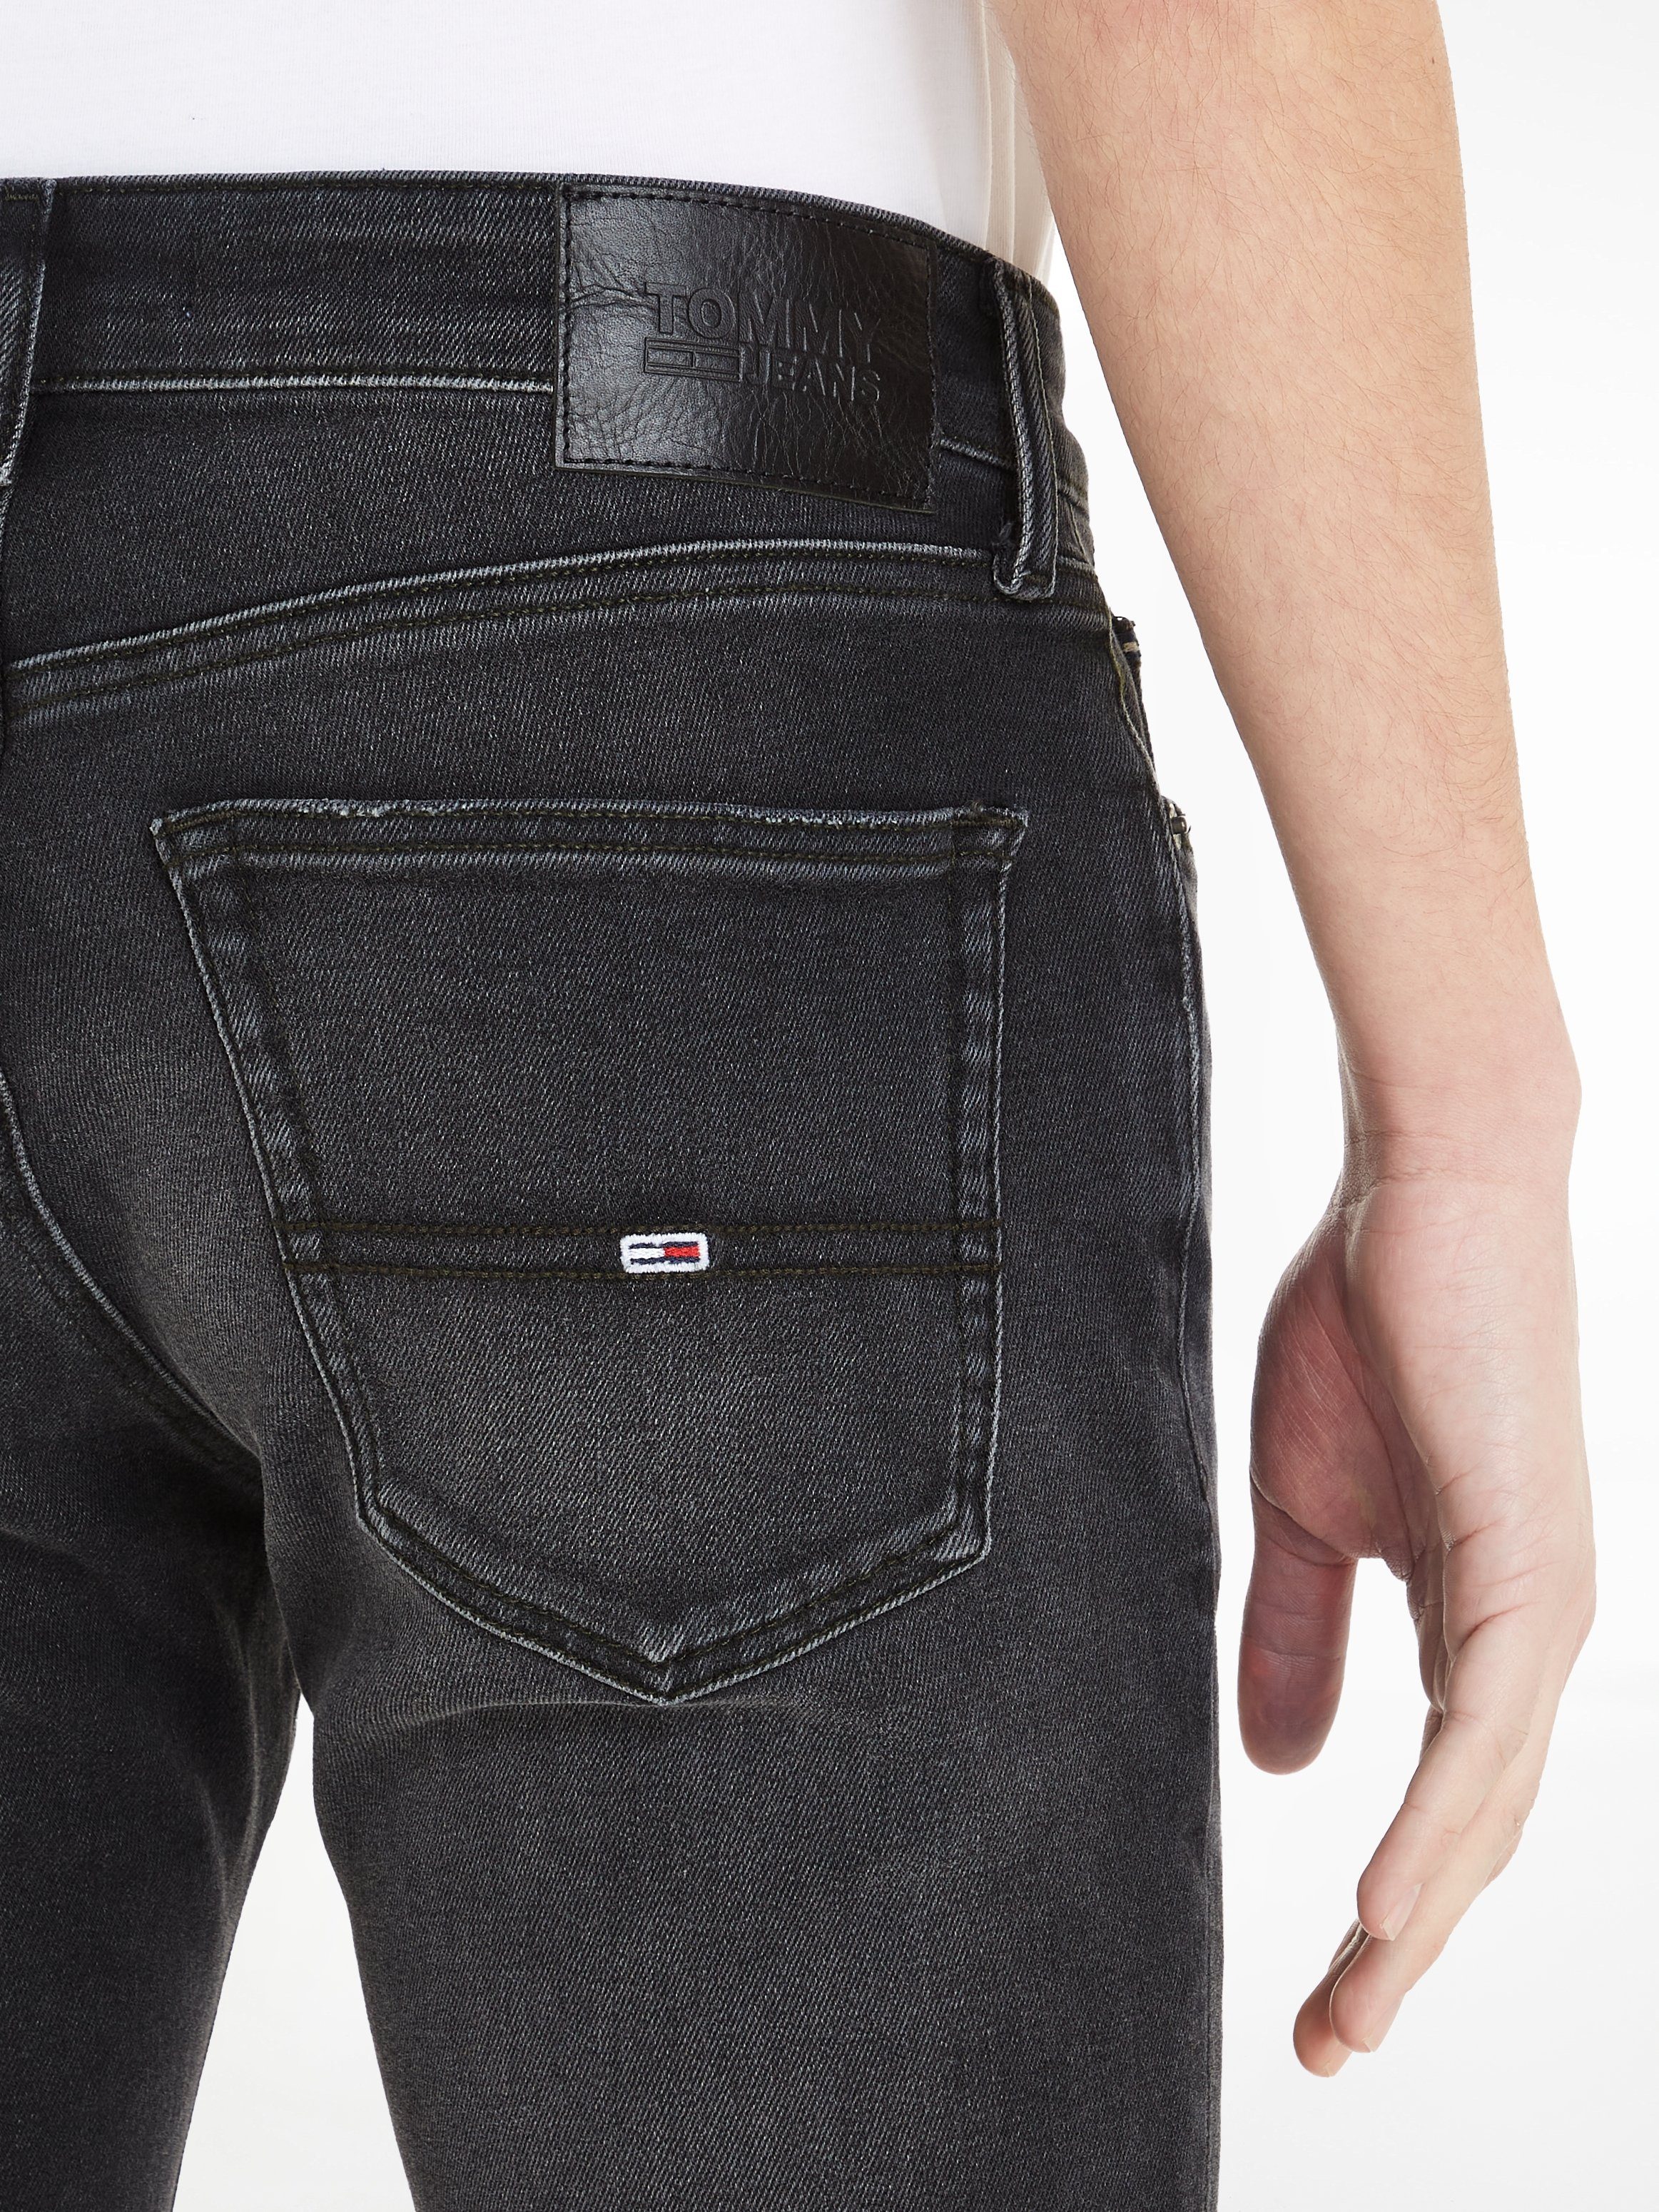 Denim SCANTON Jeans SLIM Black Tommy 5-Pocket-Jeans